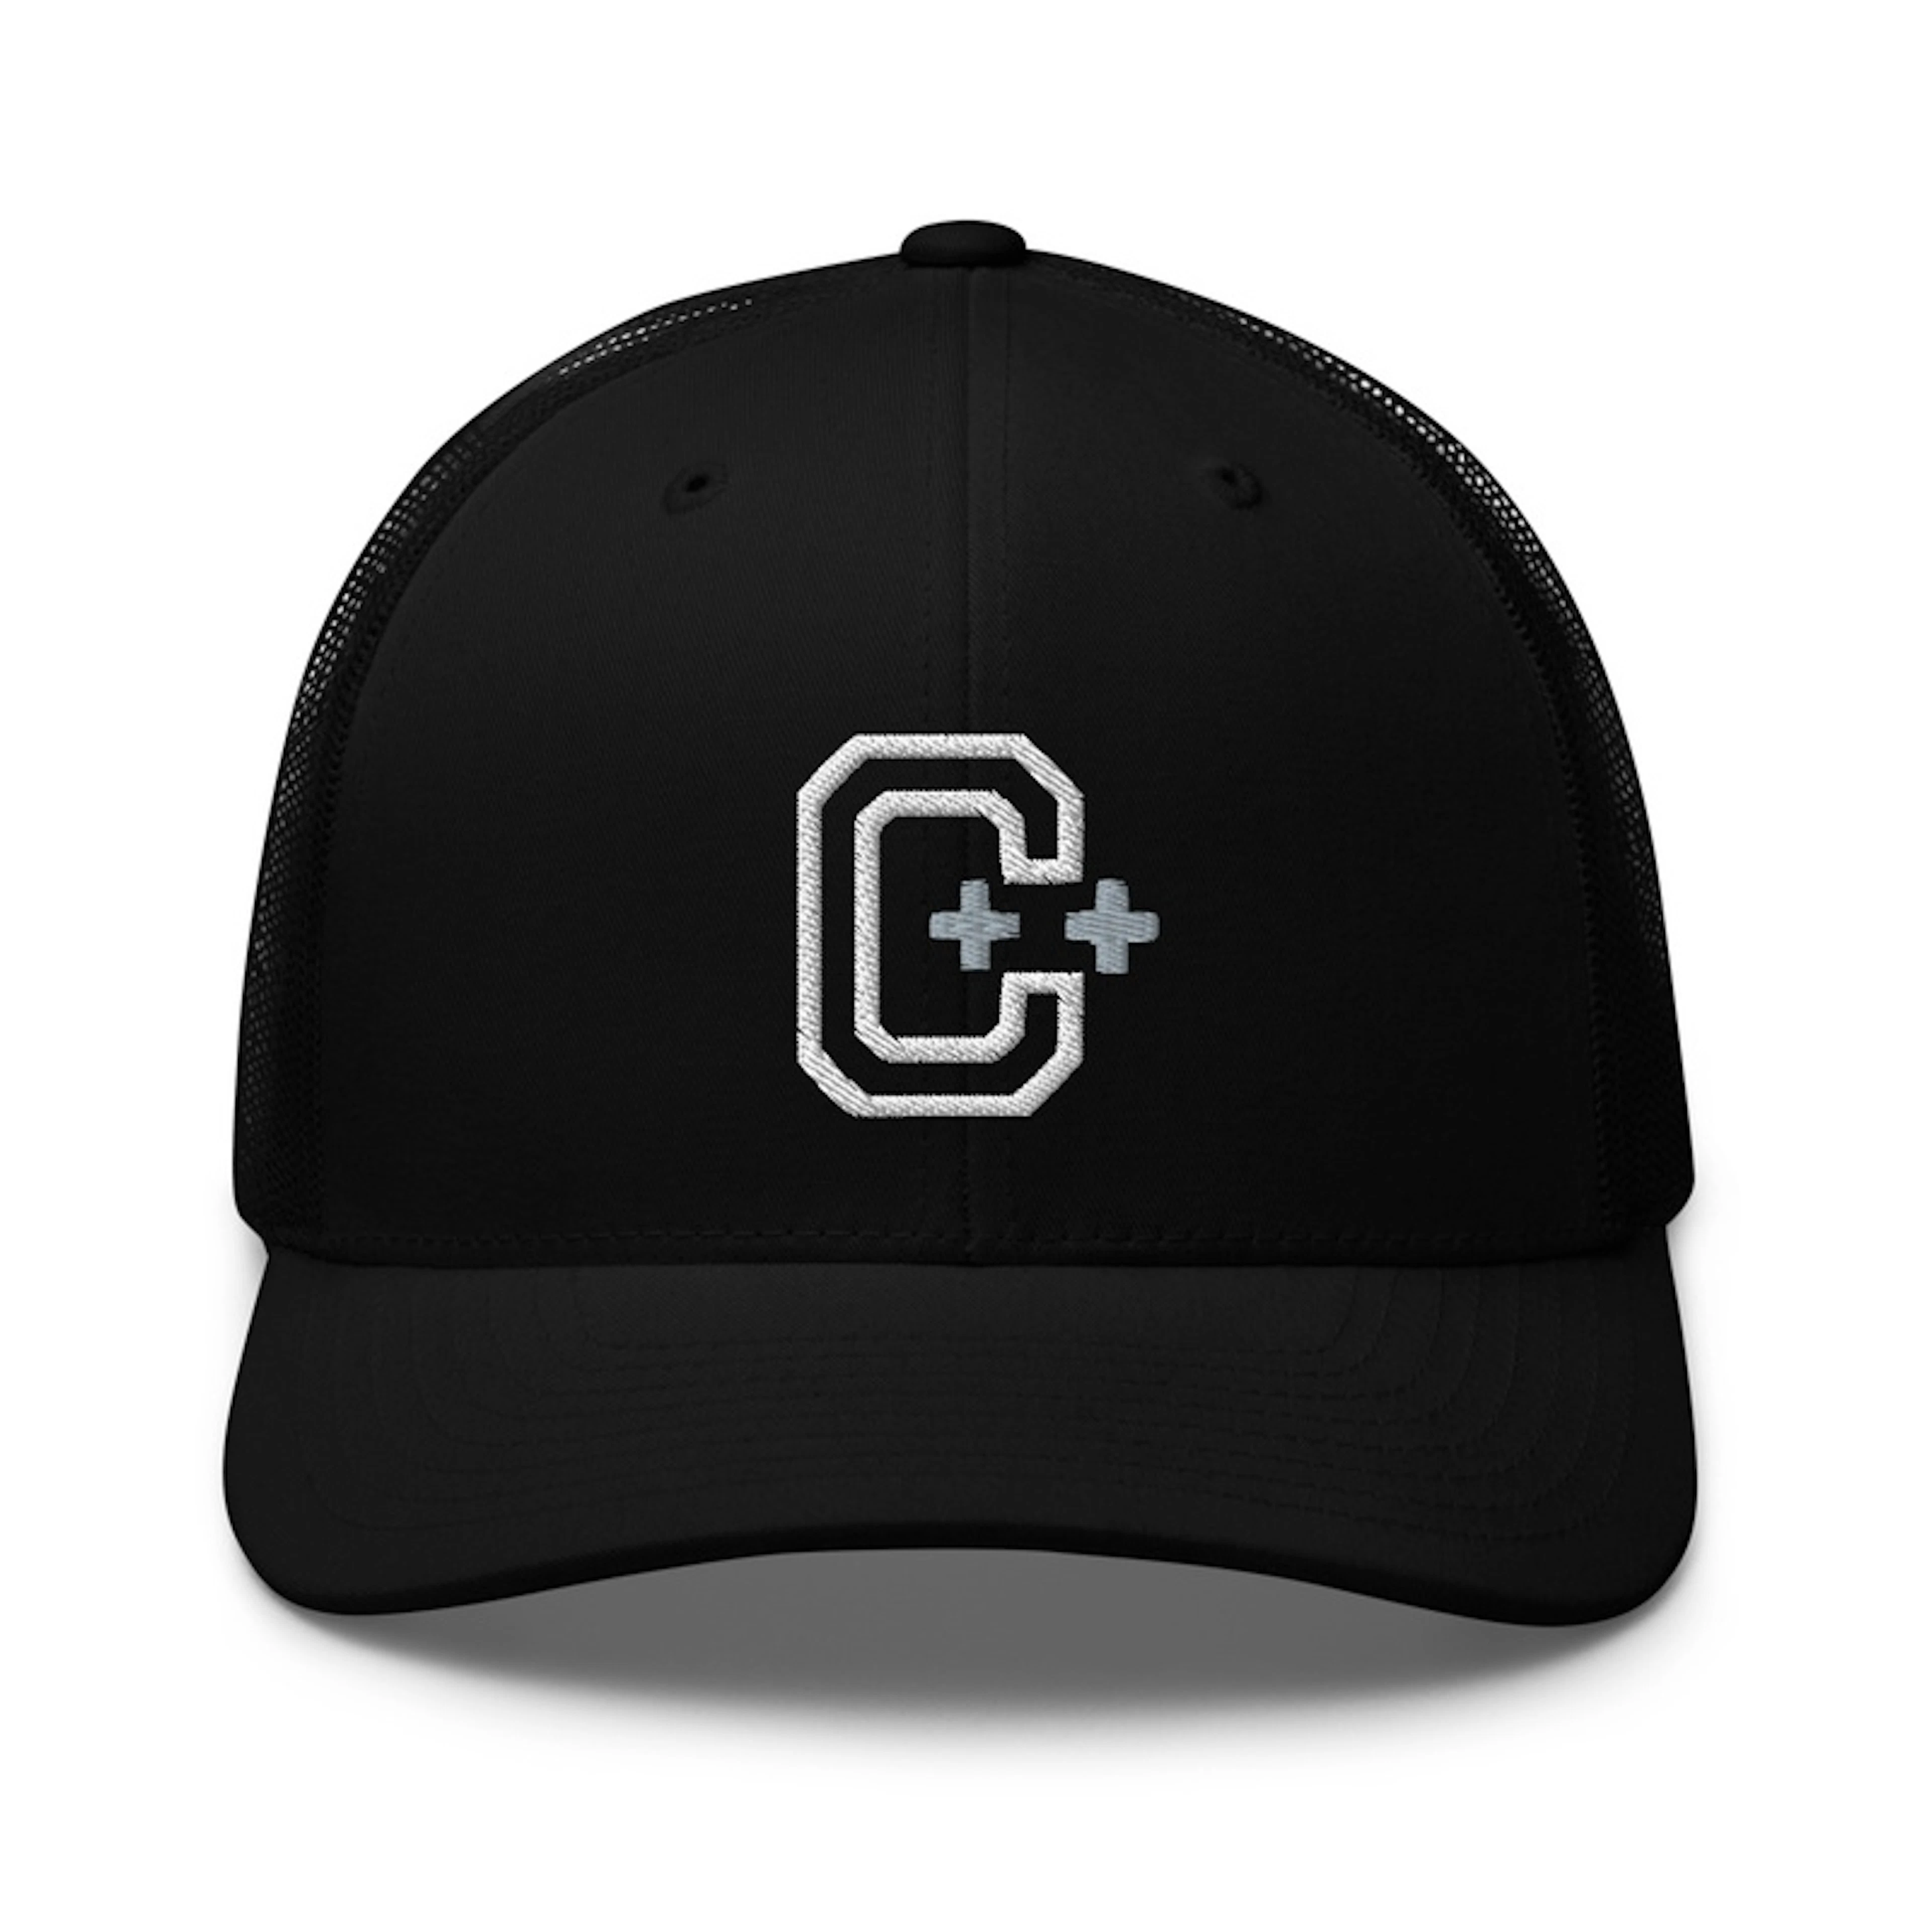 C/C++ - Premium Cap